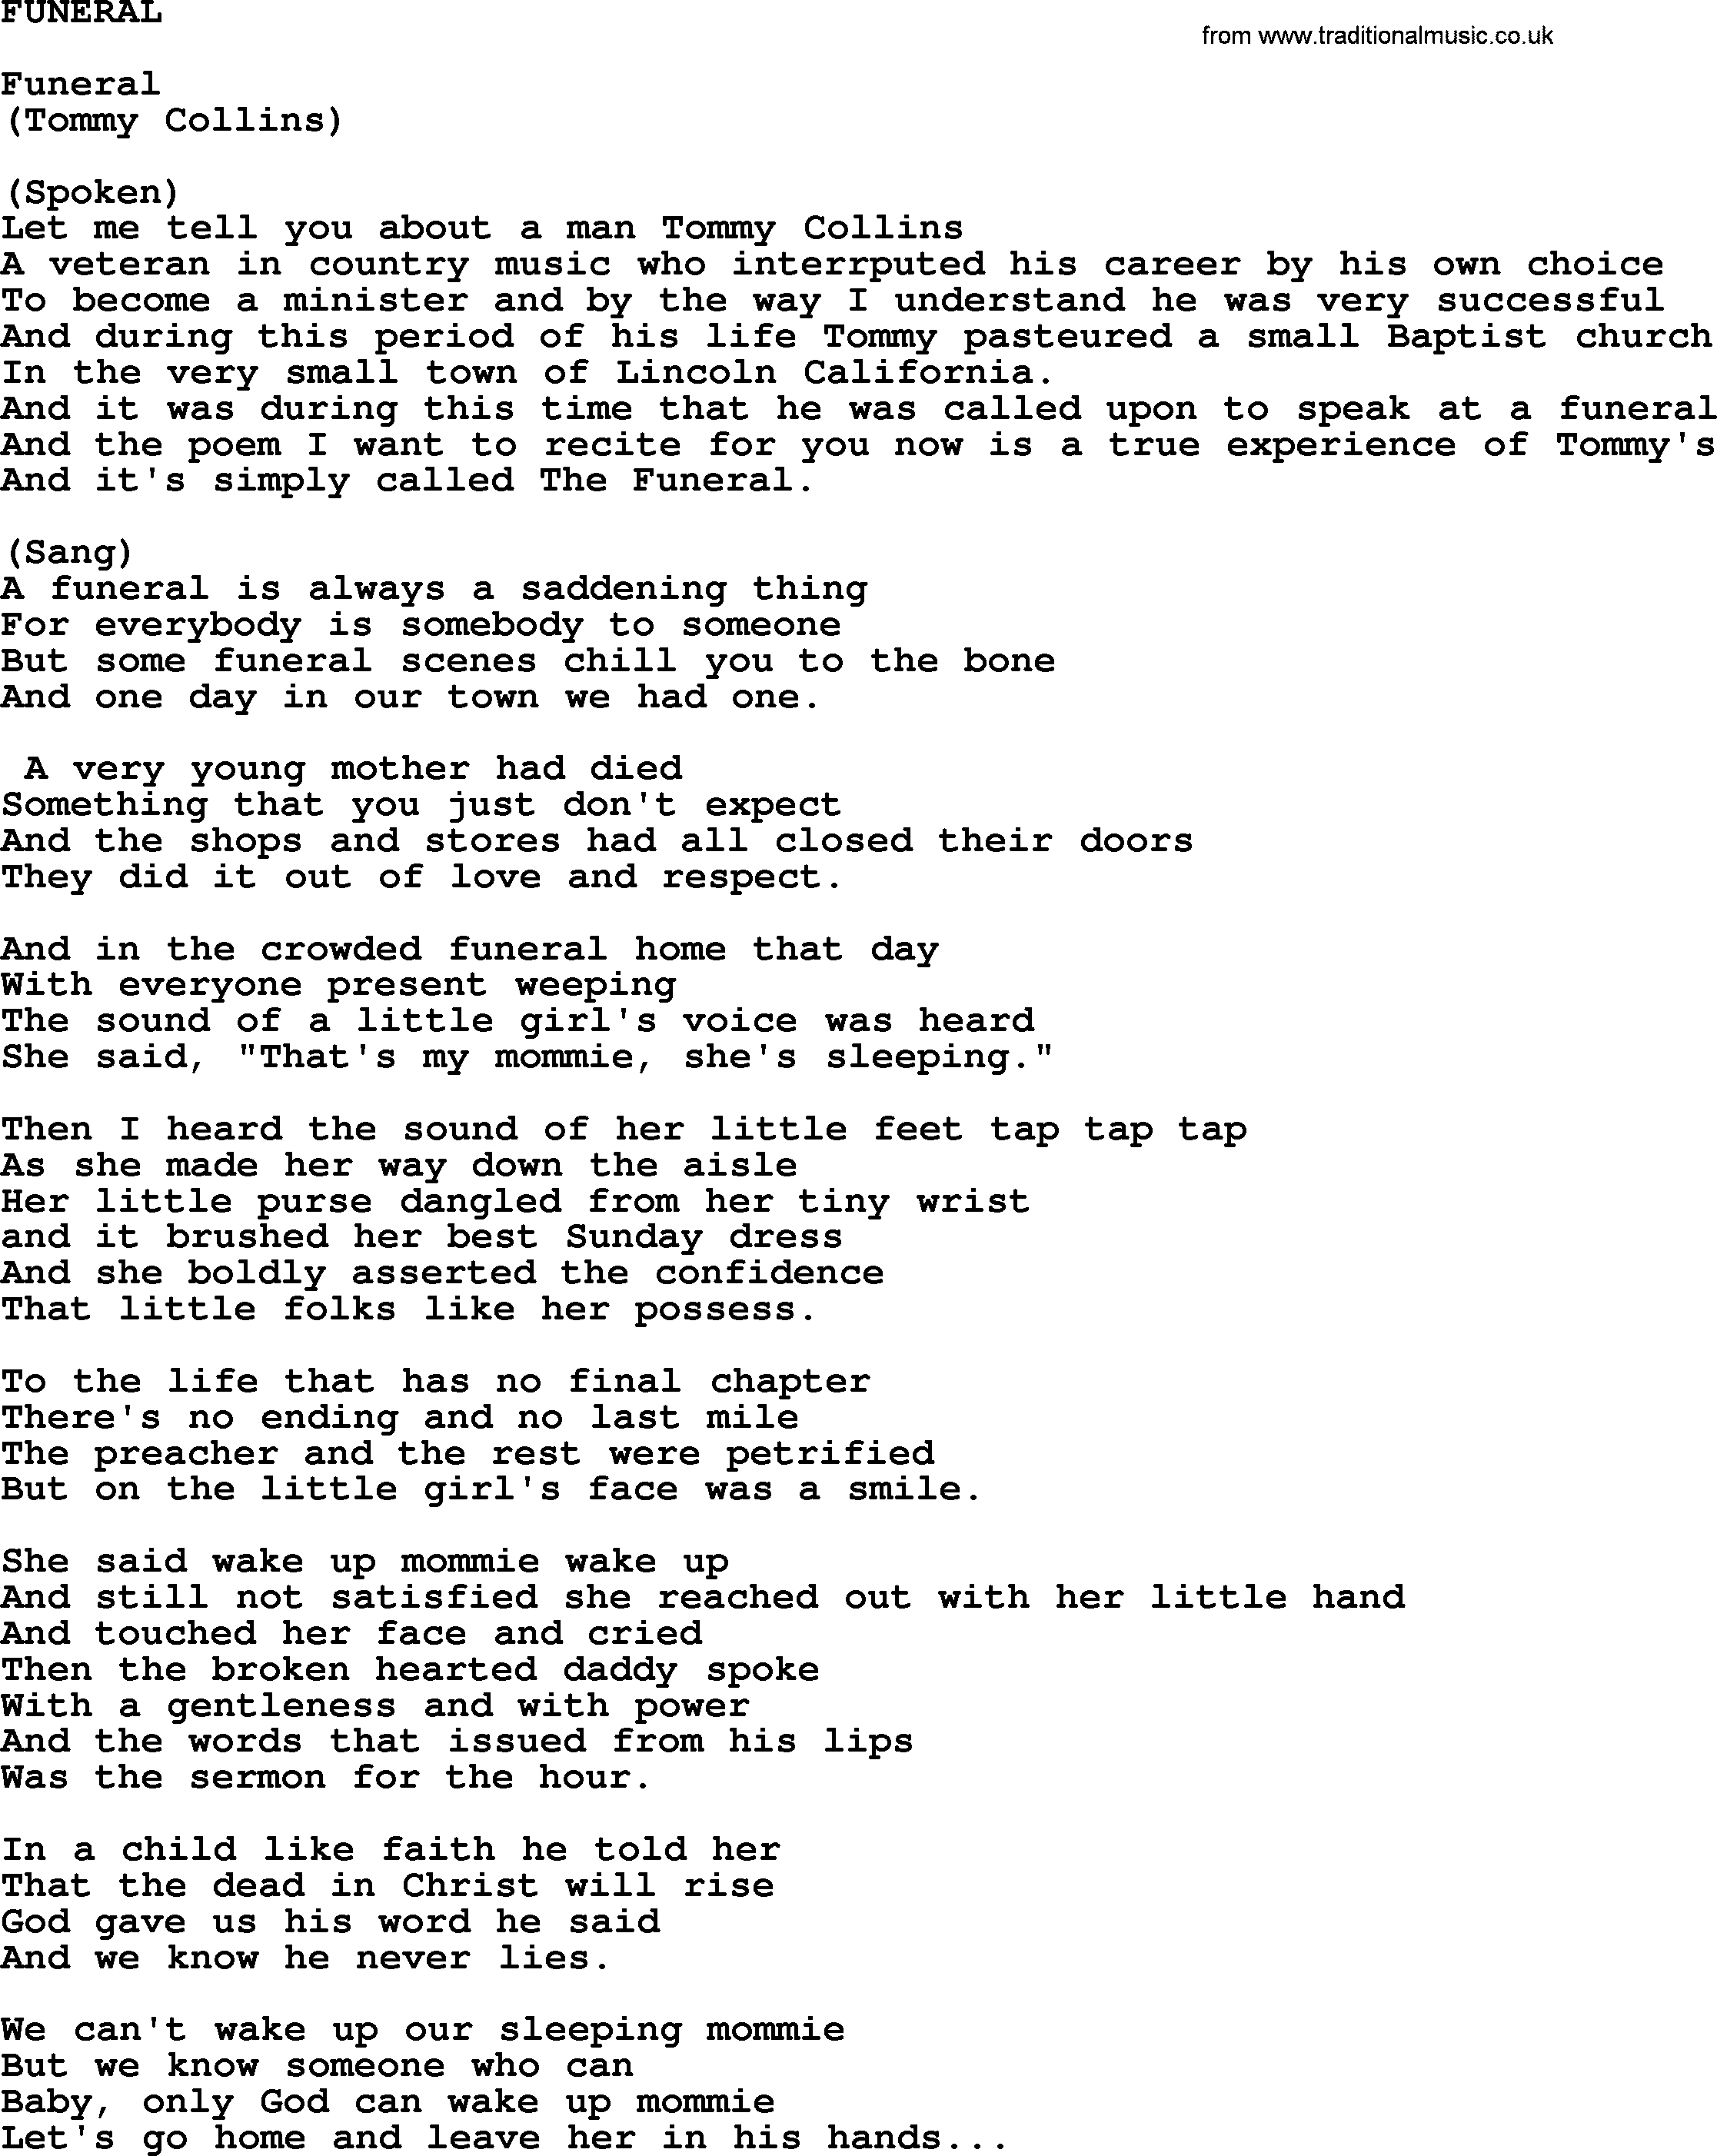 Merle Haggard song: Funeral, lyrics.